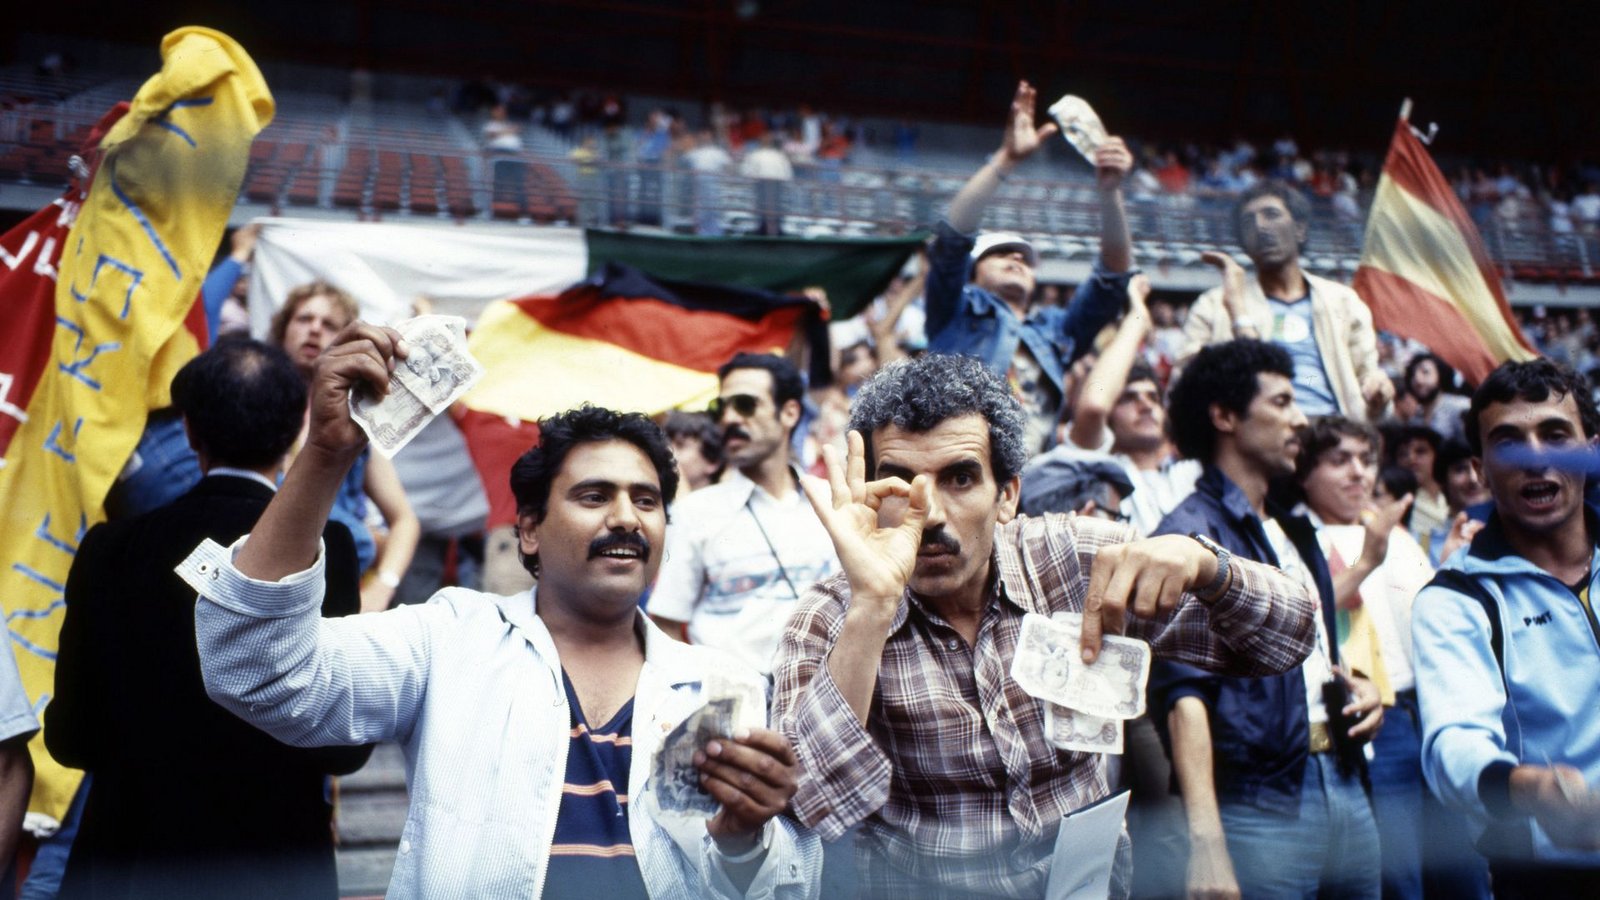 Auch beim nächsten bitteren  Erlebnis vier Jahre später bei der WM 1982 in Spanien spielte Nachbar  Österreich wieder eine entscheidende Rolle. Das Duell ging als die „Schande von Gijon“ in die Geschichte ein.  Nach dem frühen 1:0 durch Horst Hrubesch einigten sich Deutschland und  Österreich auf einen „Nichtangriffspakt“ mit zähem Ballgeschiebe, denn mit dem 1:0 waren beide in der Zwischenrunde –  und Algerien musste nach Hause fahren (auf dem Foto winken aufgebrachte algerische Fans mit Geldscheinen). Die Fifa  zog damals zumindest eine Konsequenz: Seitdem  finden die letzten Gruppenspiele immer parallel statt.  Zur „Strafe“ verlor Deutschland, das viele Sympathien verspielt hatte,  das Finale gegen Italien mit 1:3.Foto: imago/Sportfoto Rudel